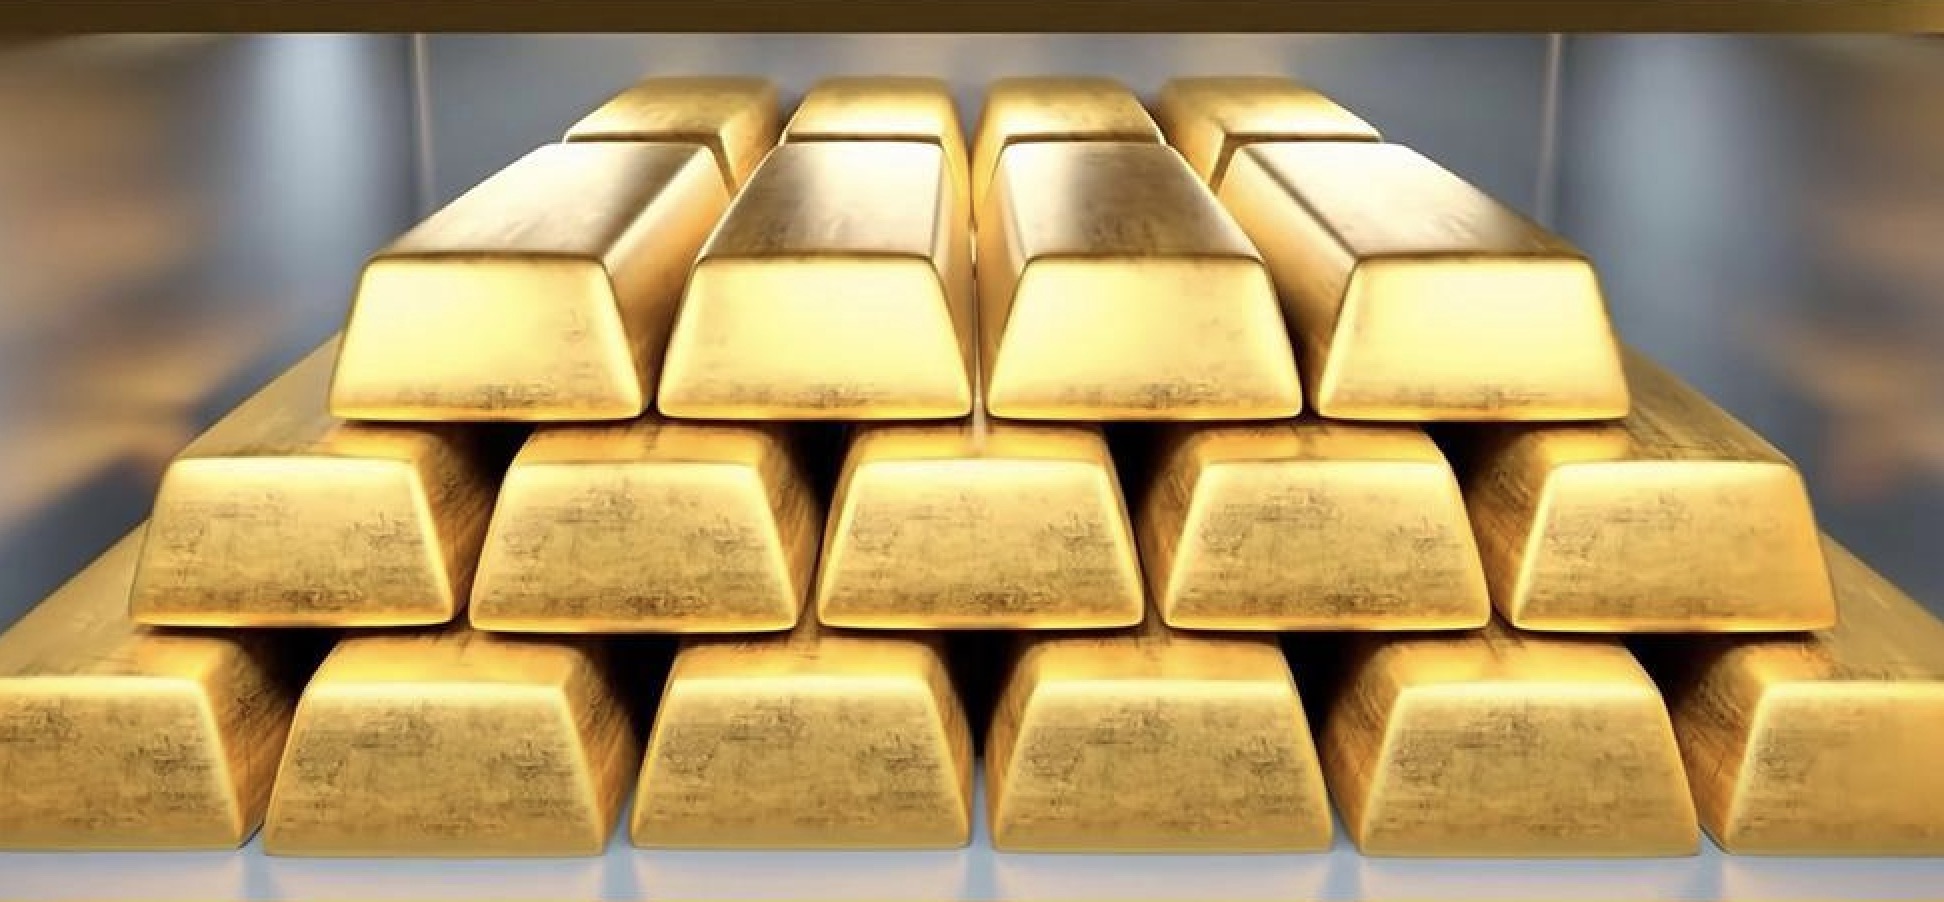 คำเตือนการซื้อขายทองคำ: ราคาทองคำเพิ่มขึ้นเล็กน้อย ผู้ค้ากำลังรอข้อมูลเงินเฟ้อเพื่อวัดกรอบเวลาการปรับลดอัตราดอกเบี้ย